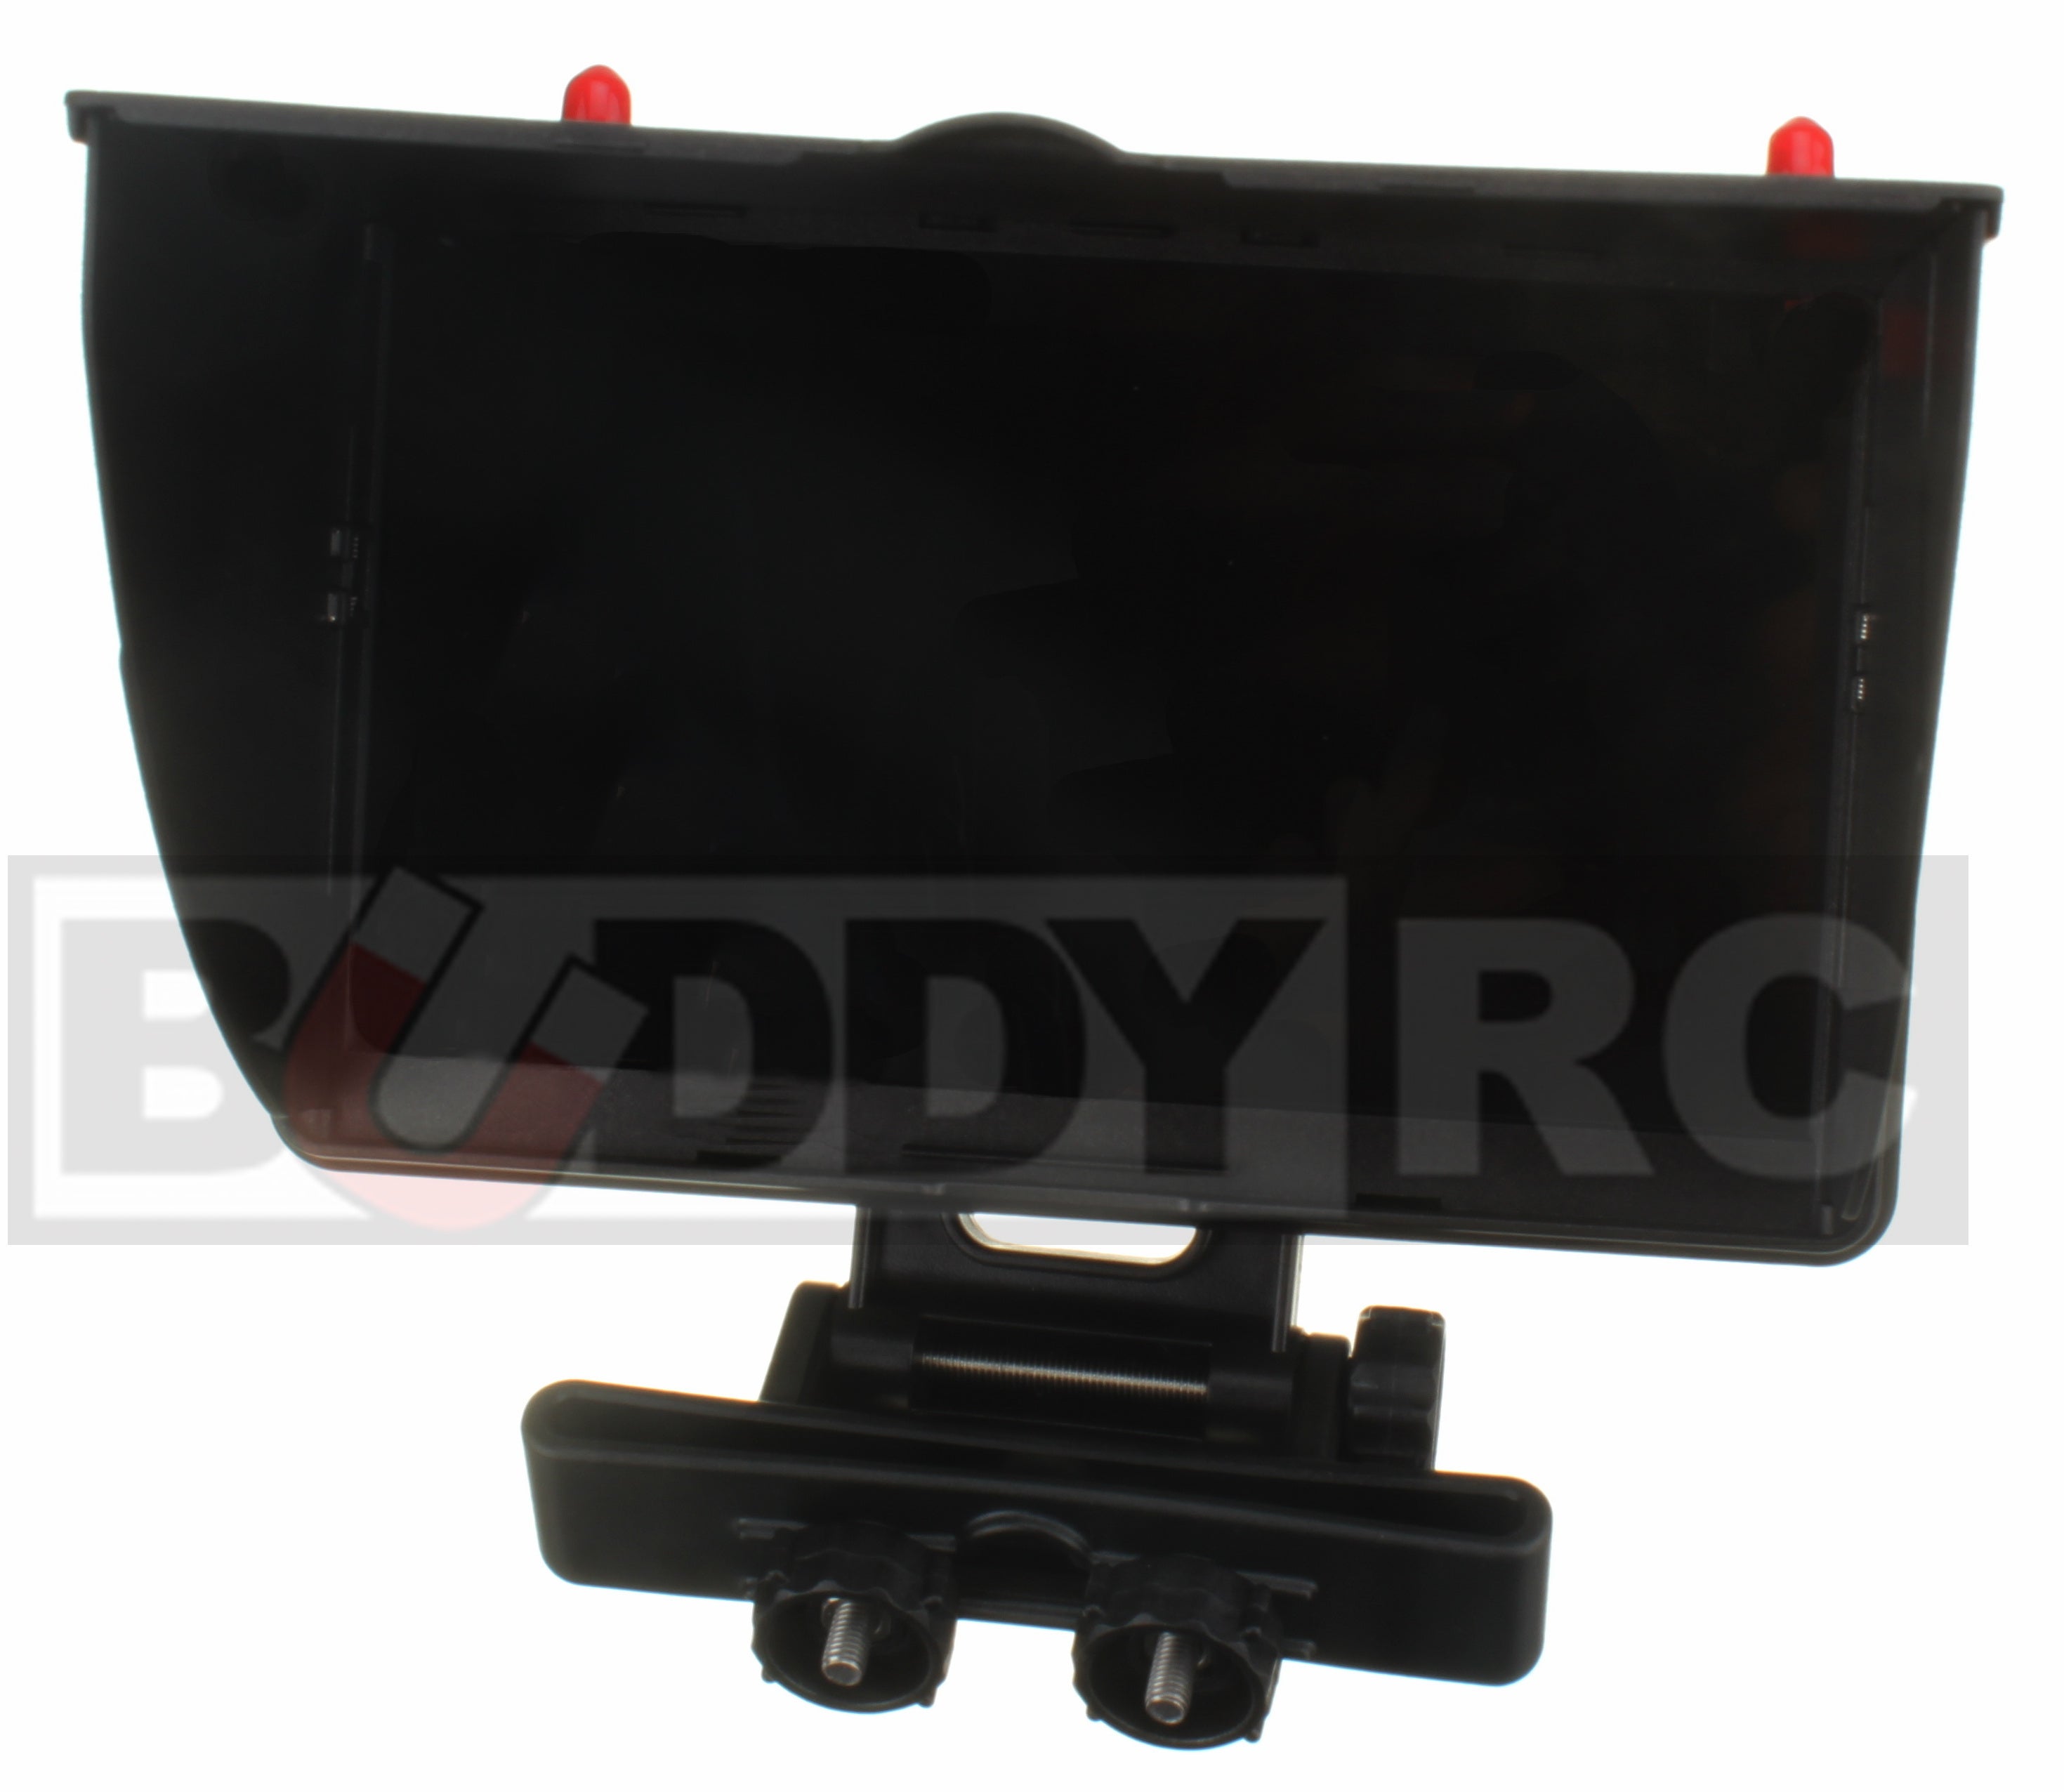 Boscam Galaxy RD2 FPV 7 inch LCD Monitor